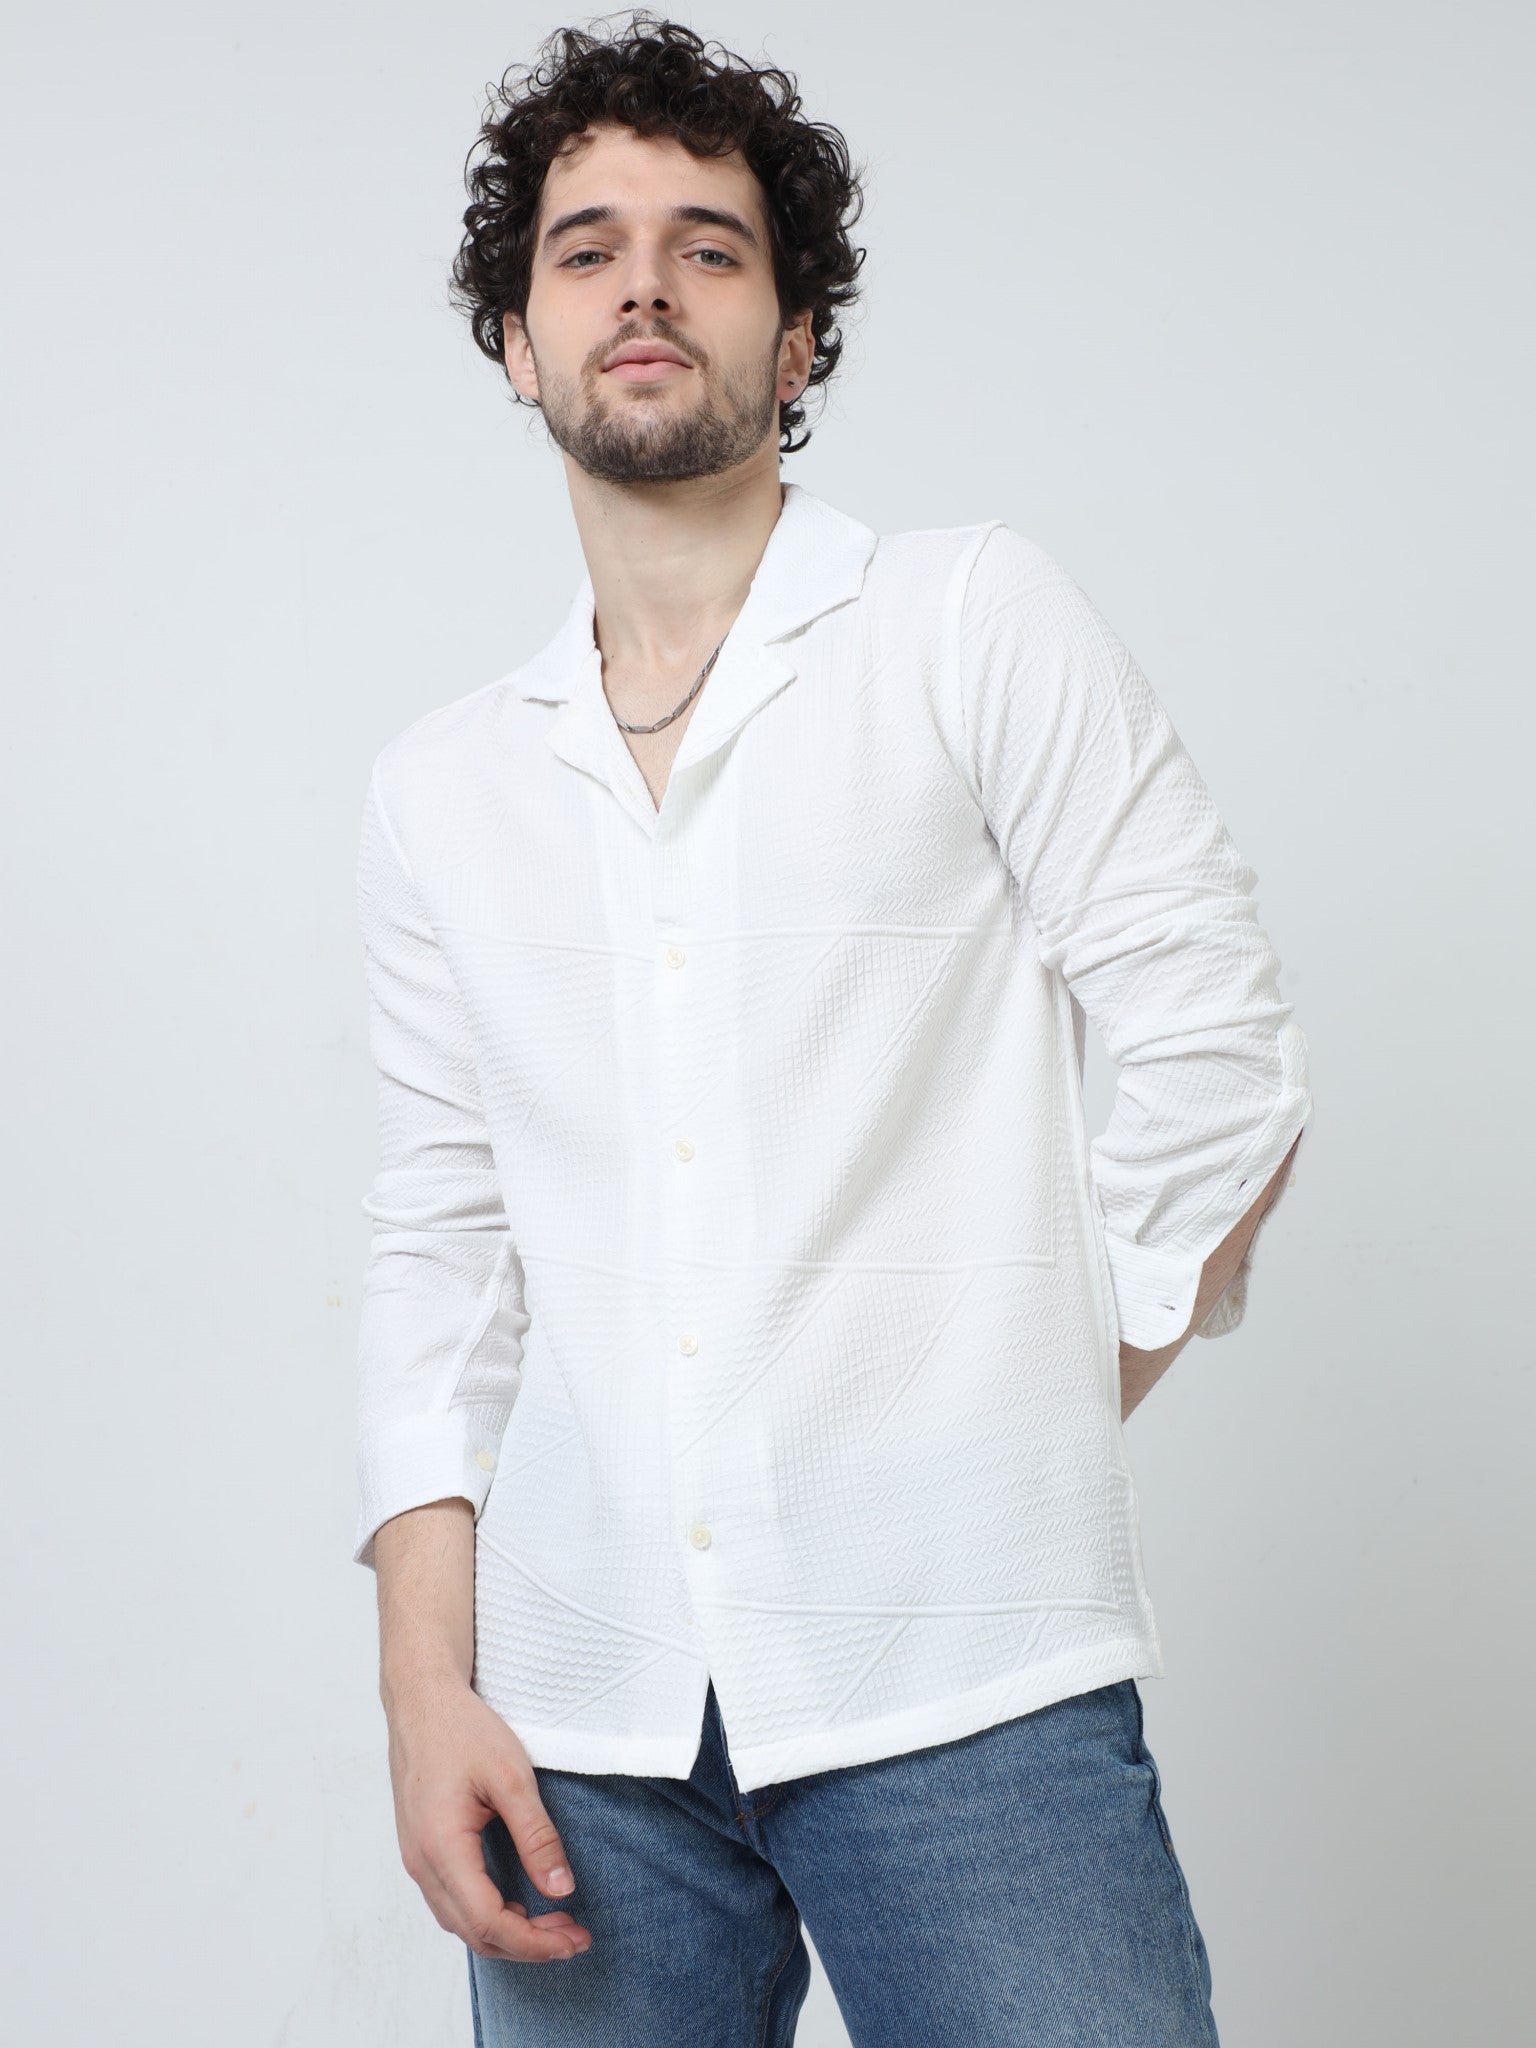 Zig Zag Jacquard White Shirt for Men